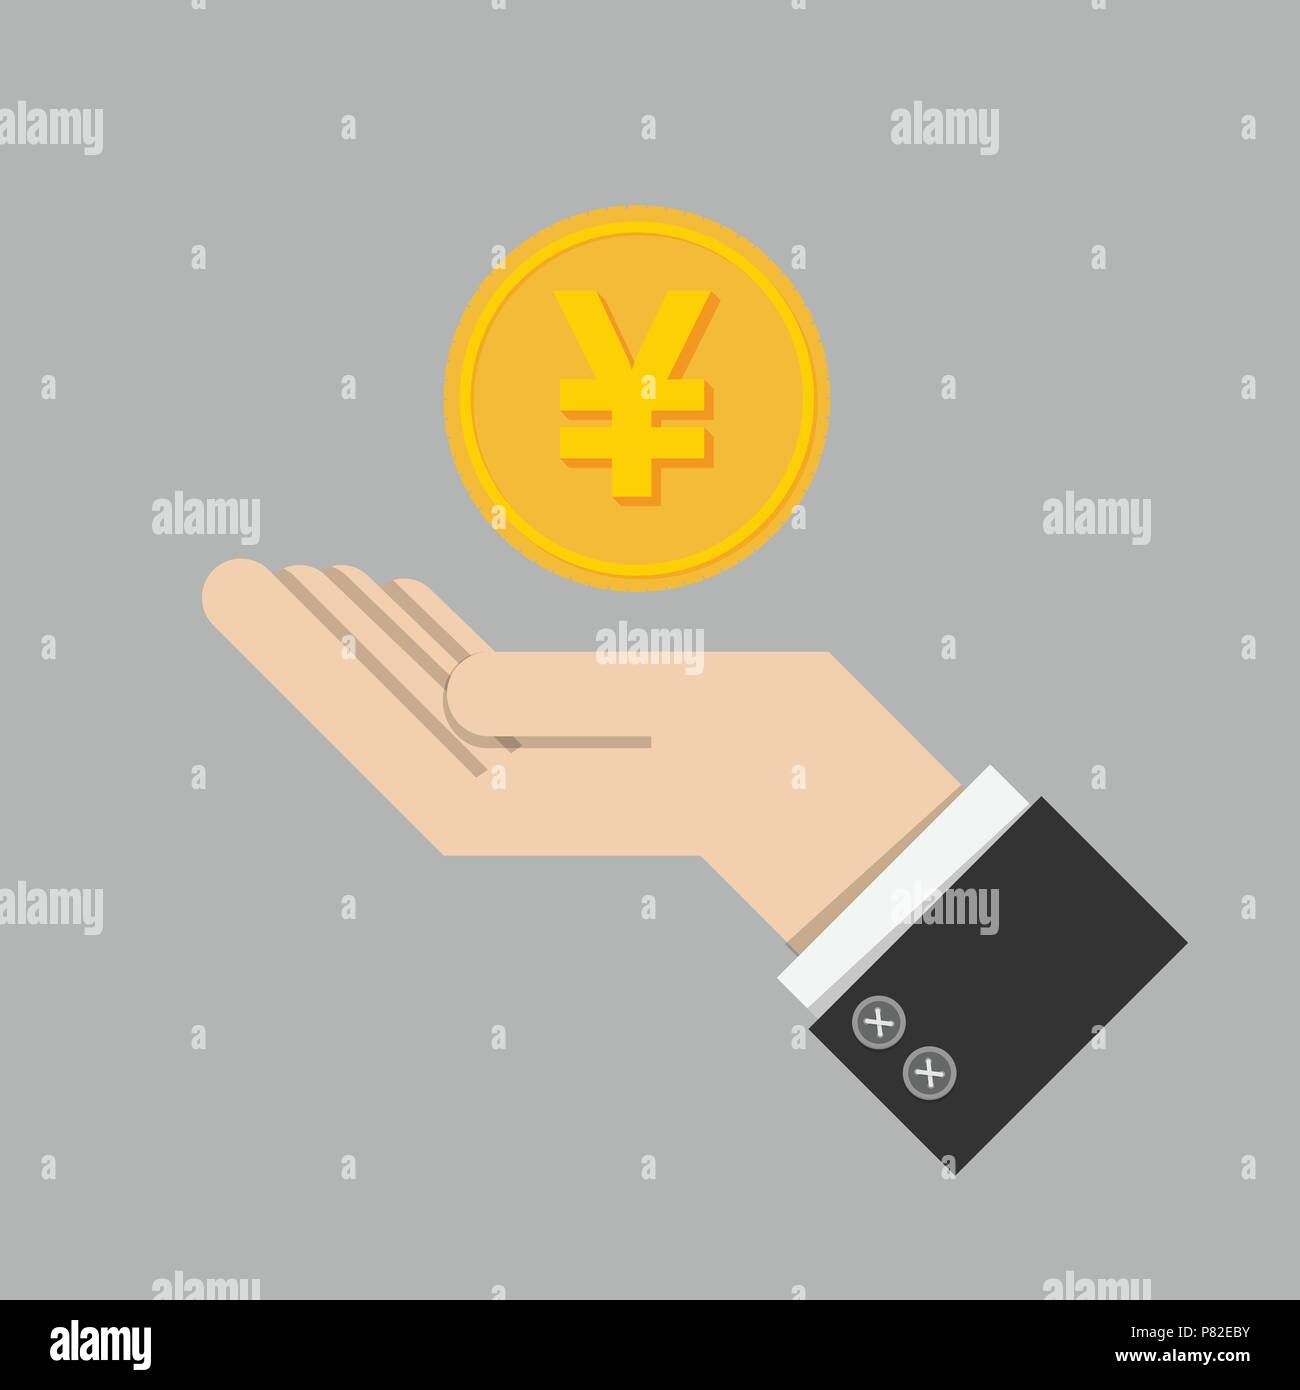 Rendite Konzept. Goldmünze mit Zeichen der Japanischen Yen Währung auf Hand, Palm von Geschäftsmann. Wachstum investieren, Finanzen planen, Personal Management Stock Vektor